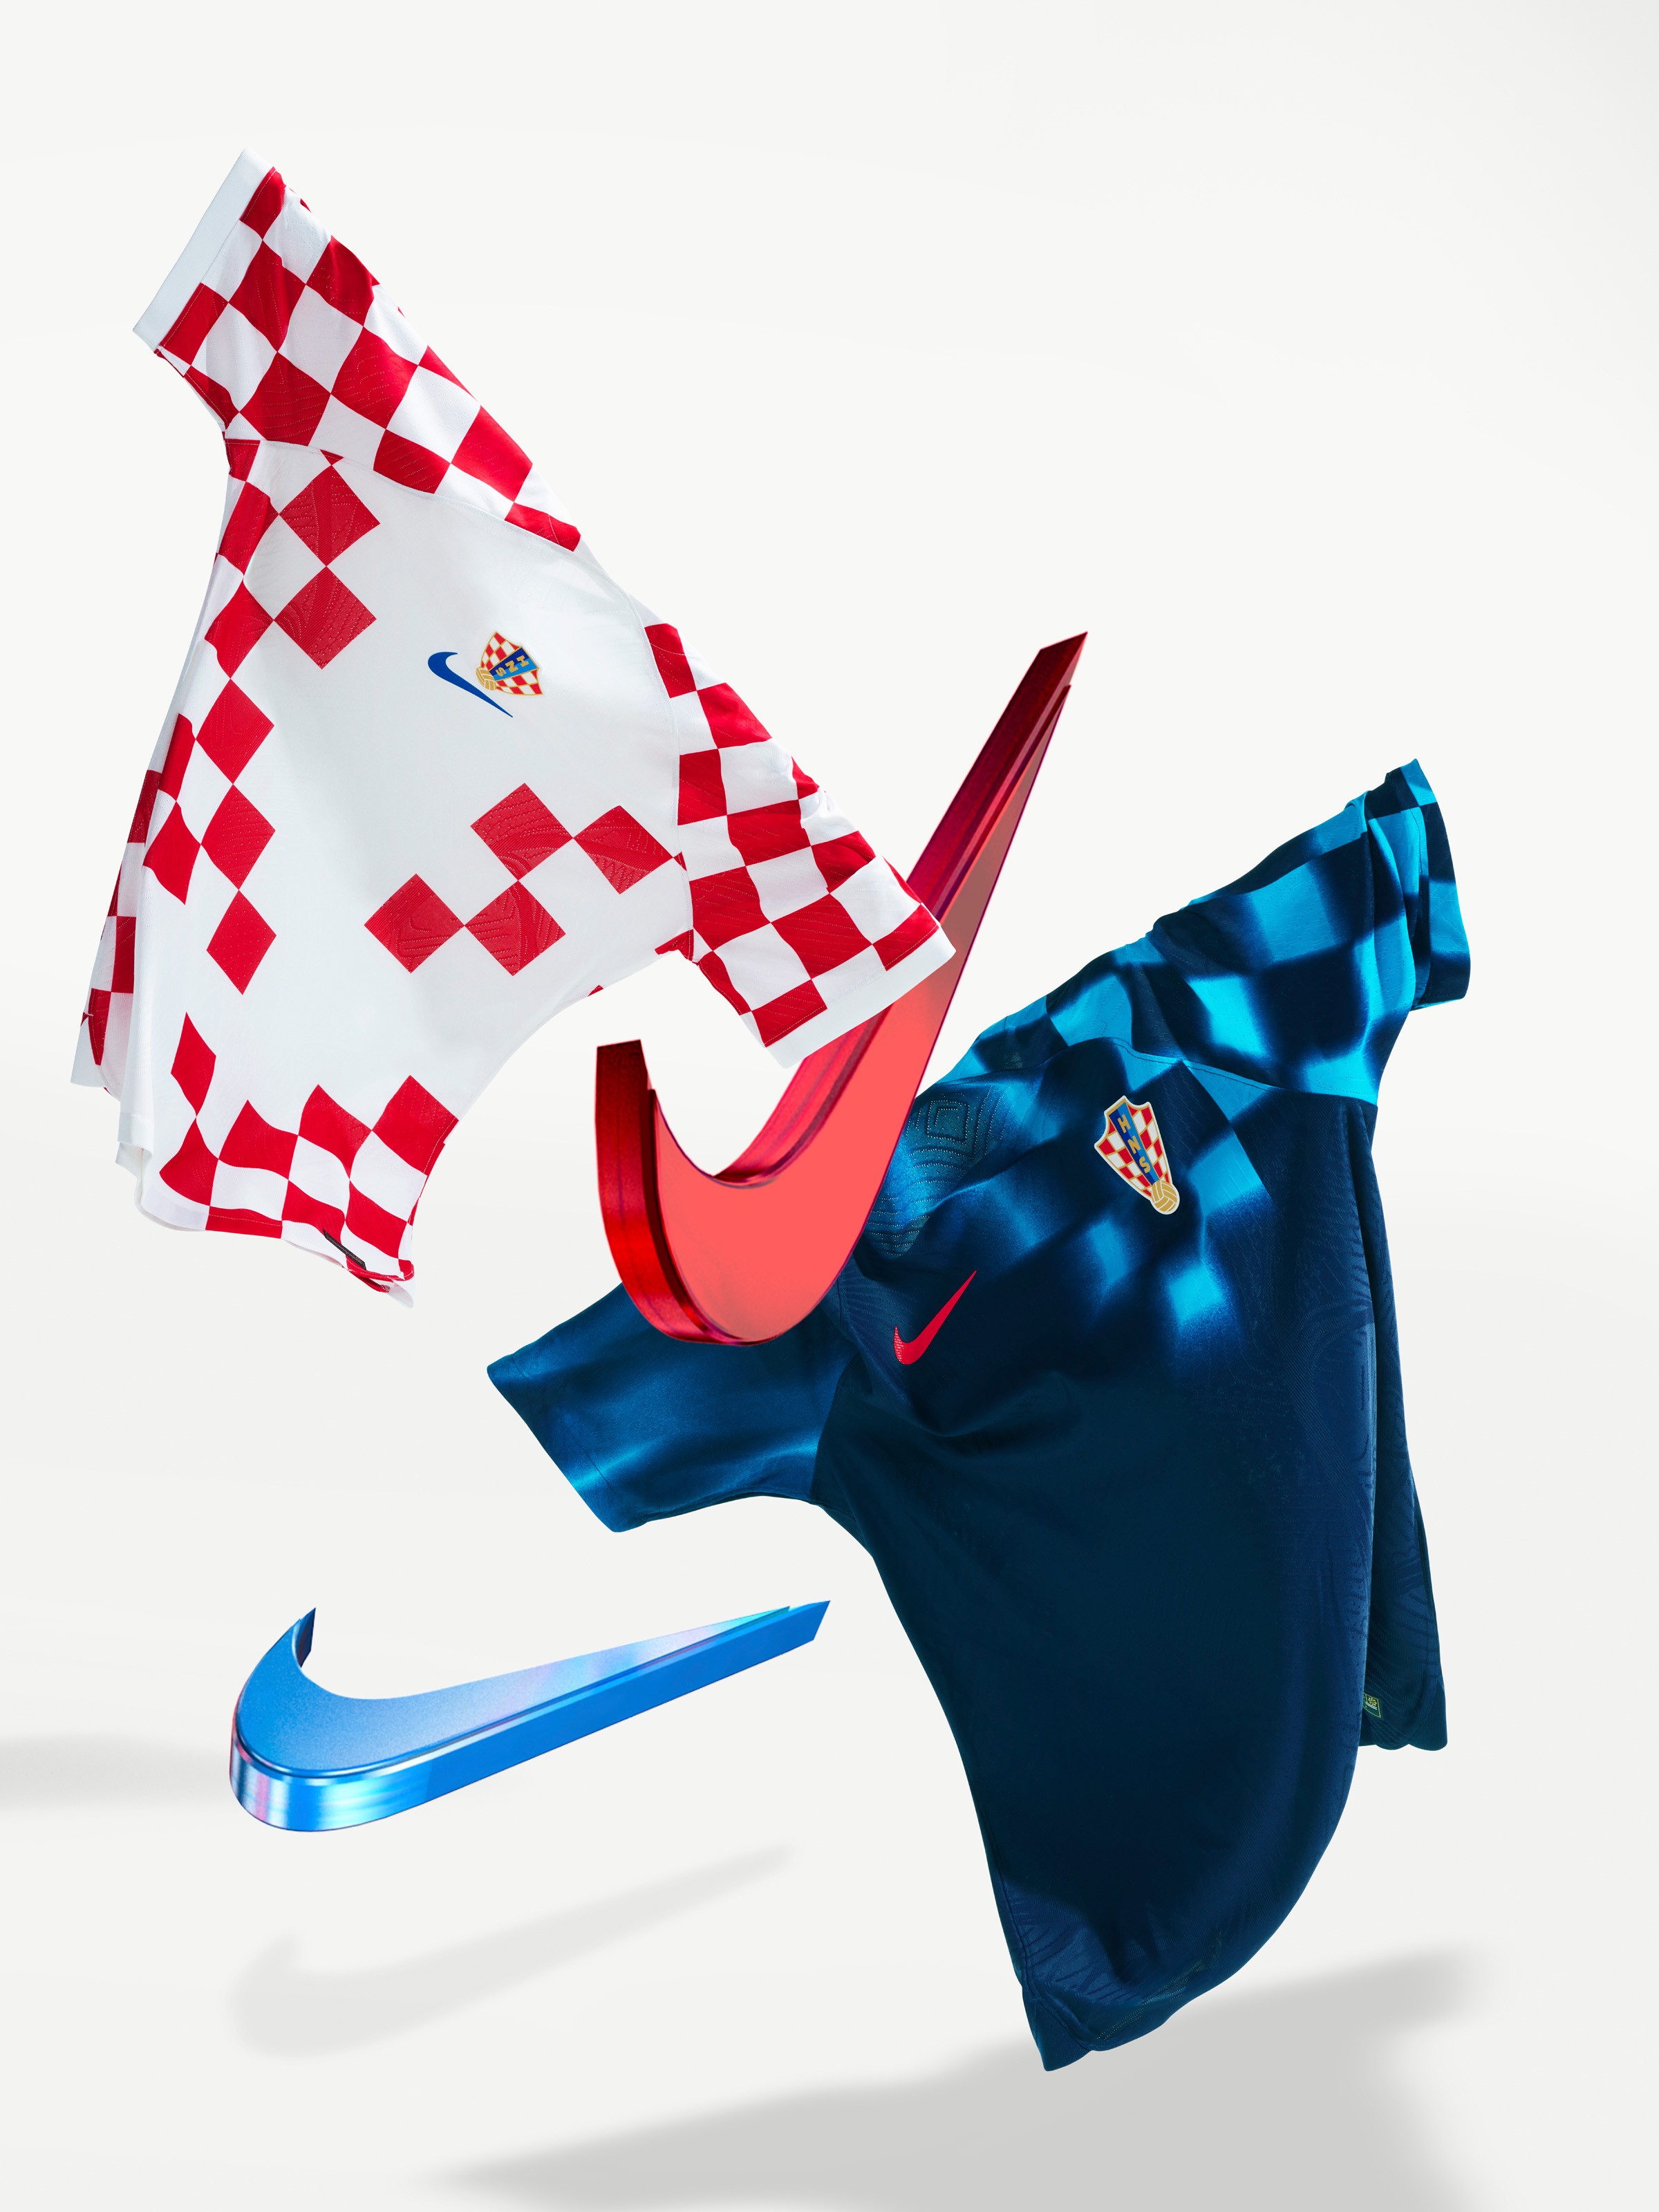 Camisetas de Croacia para Qatar 2022.